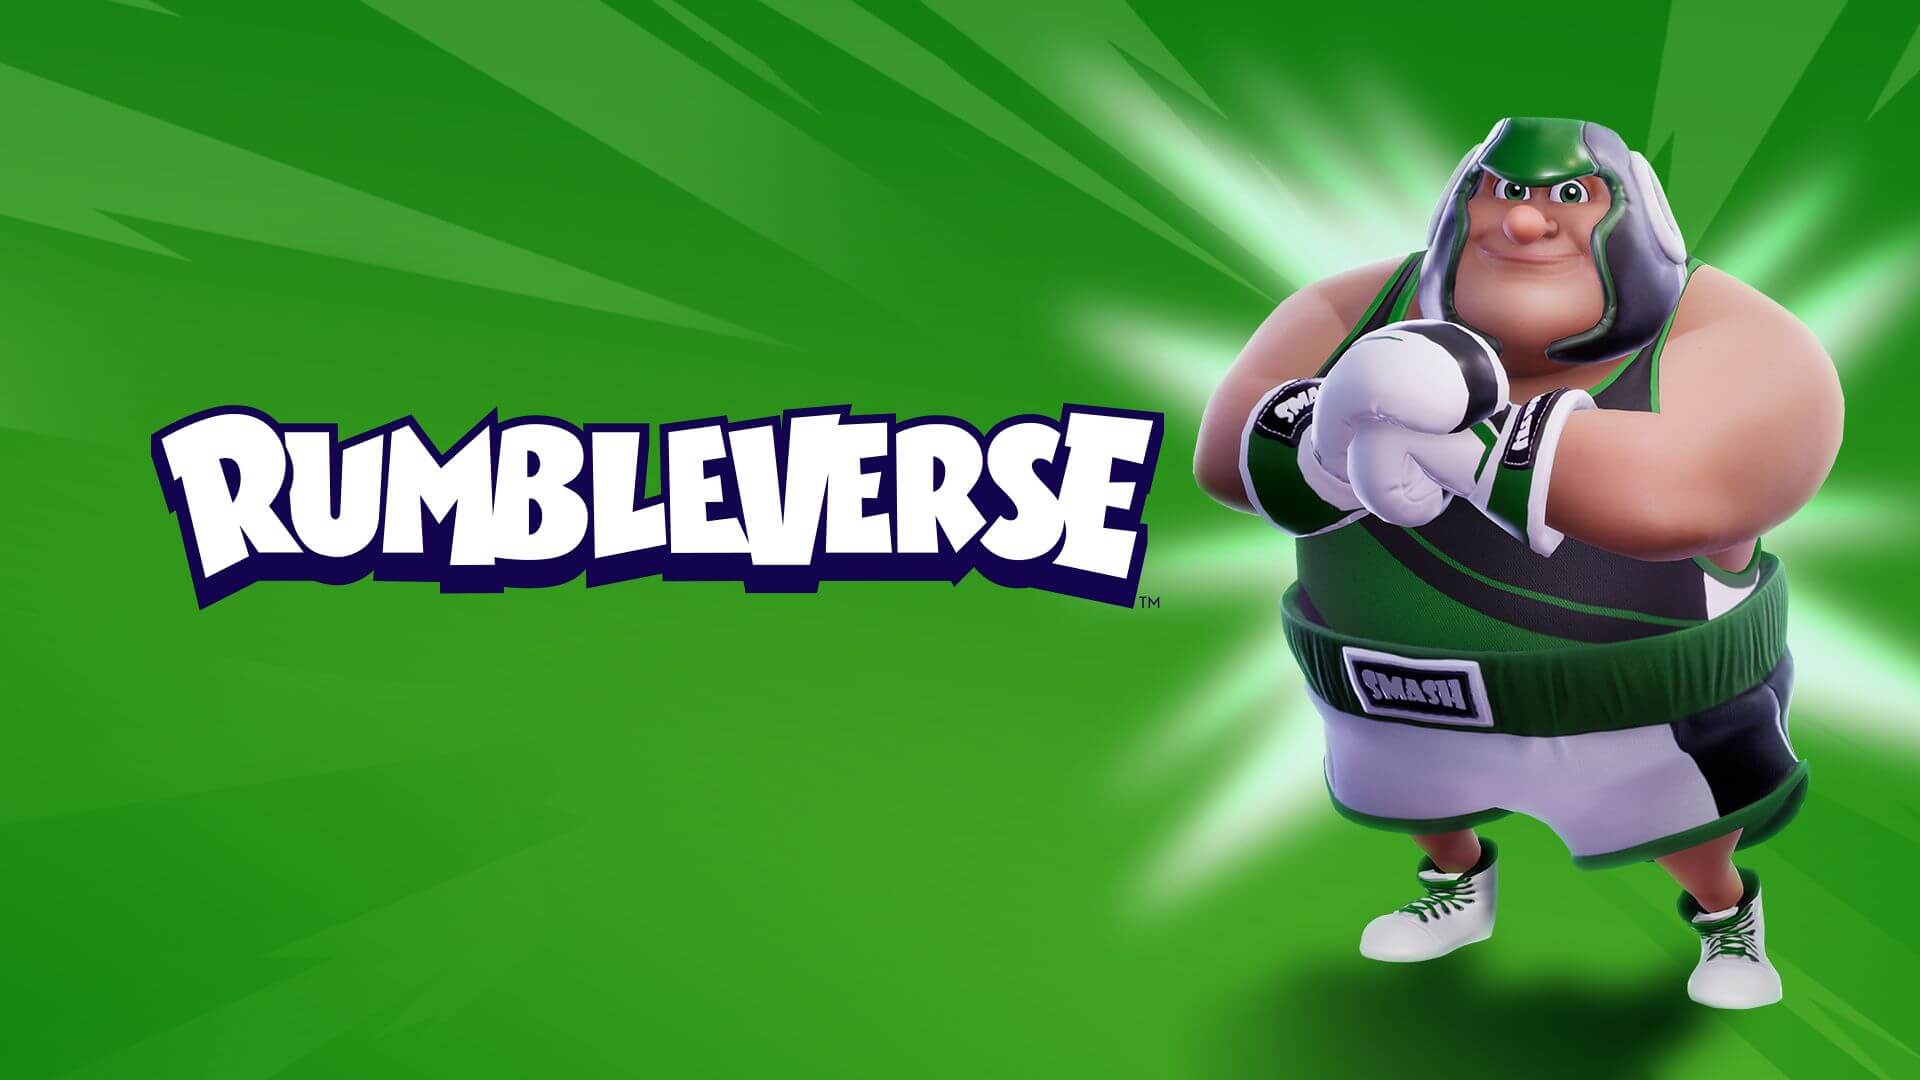 Эксклюзивный набор для Rumbleverse доступен бесплатно по Game Pass Ultimate